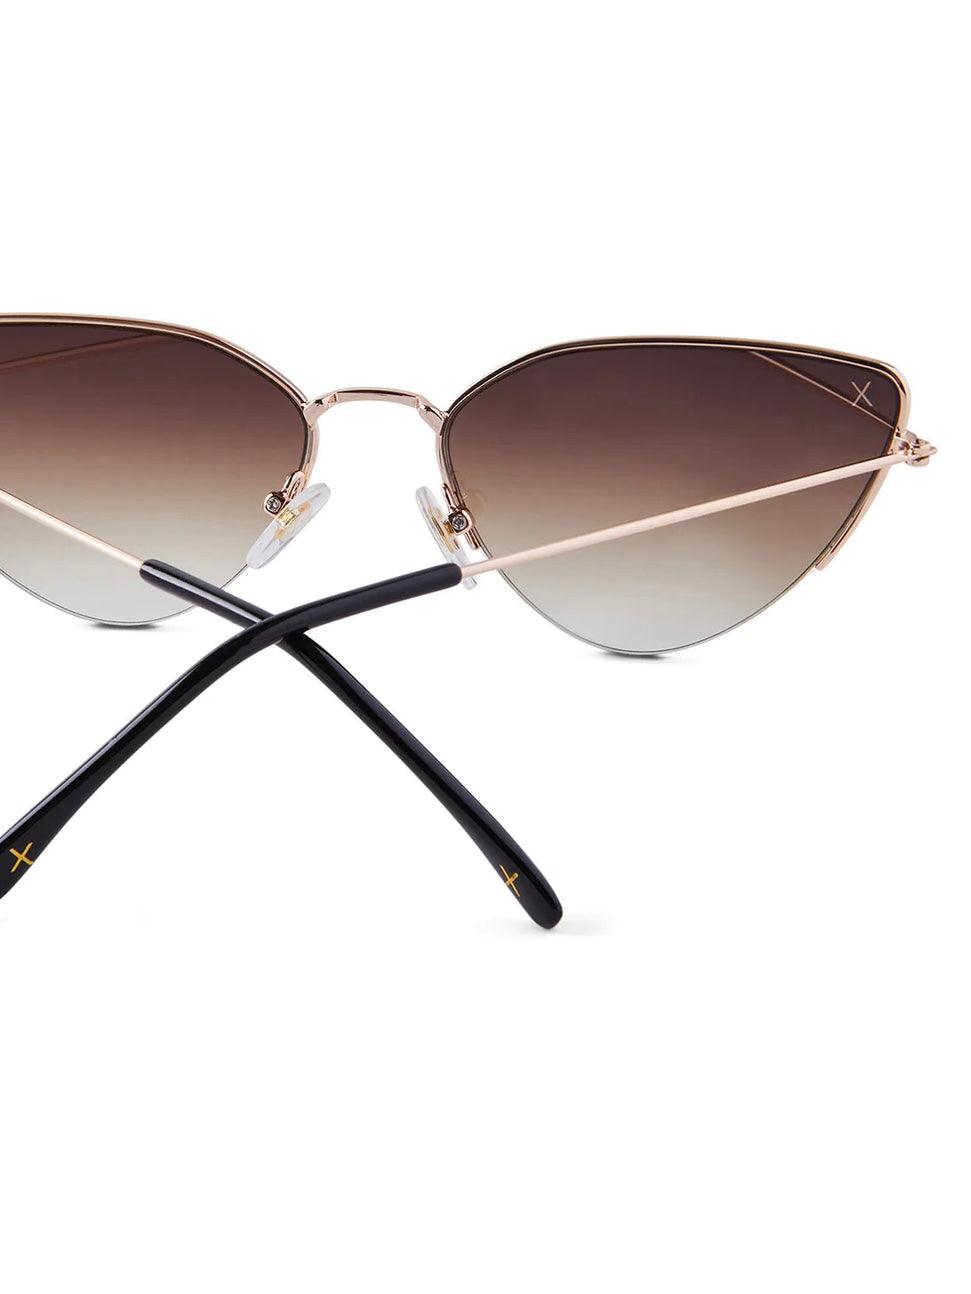 Fairfax Brushed Sunglasses - Alden+Rose LLC 